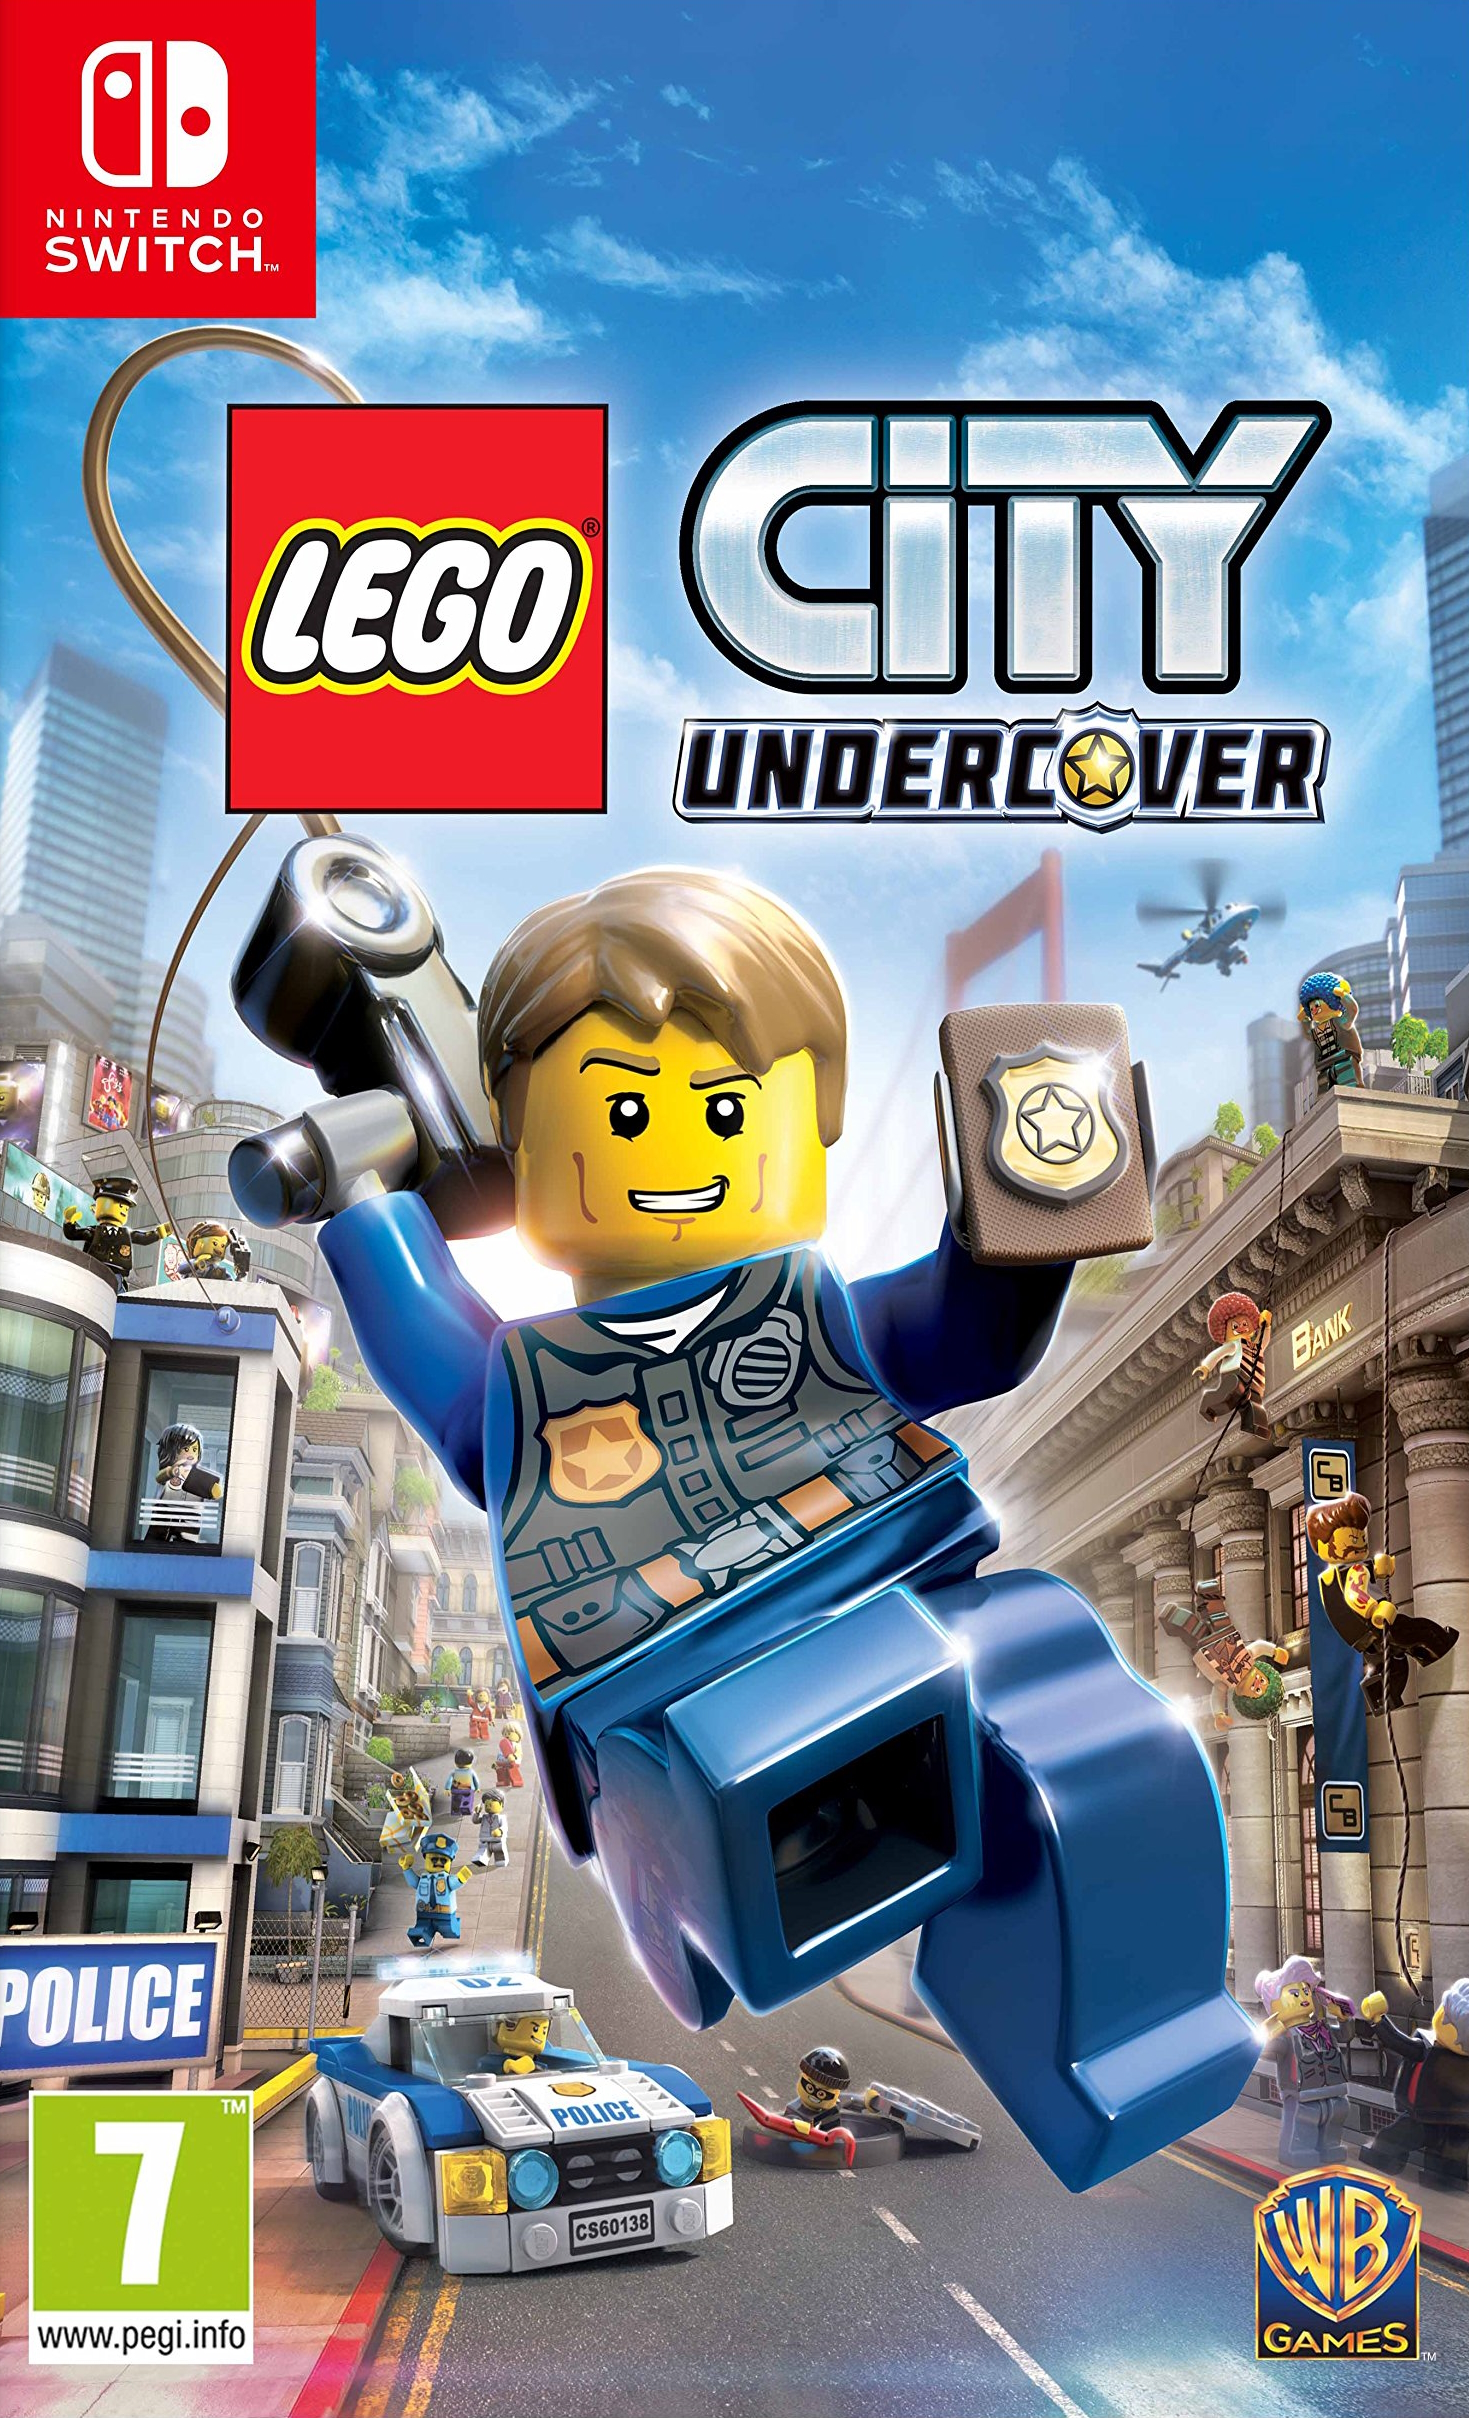 jaquette reduite de LEGO City Undercover sur Switch